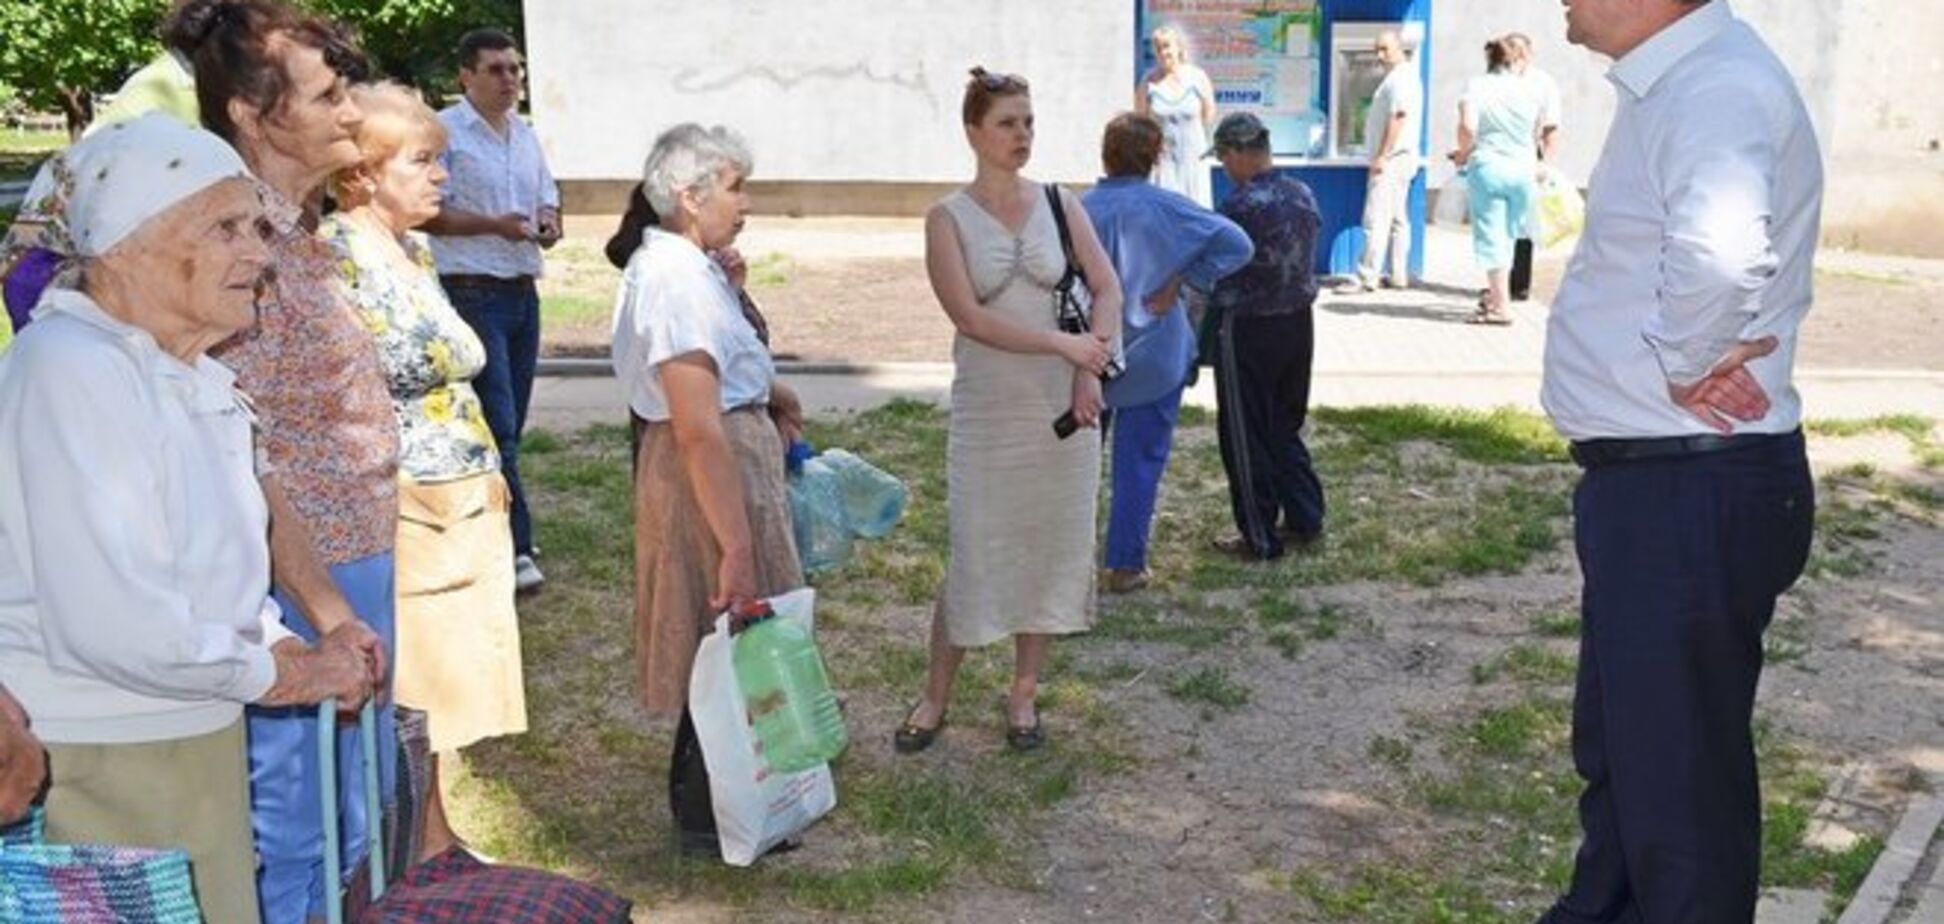 СМИ заподозрили мэра Луганска в использовании фотошопа